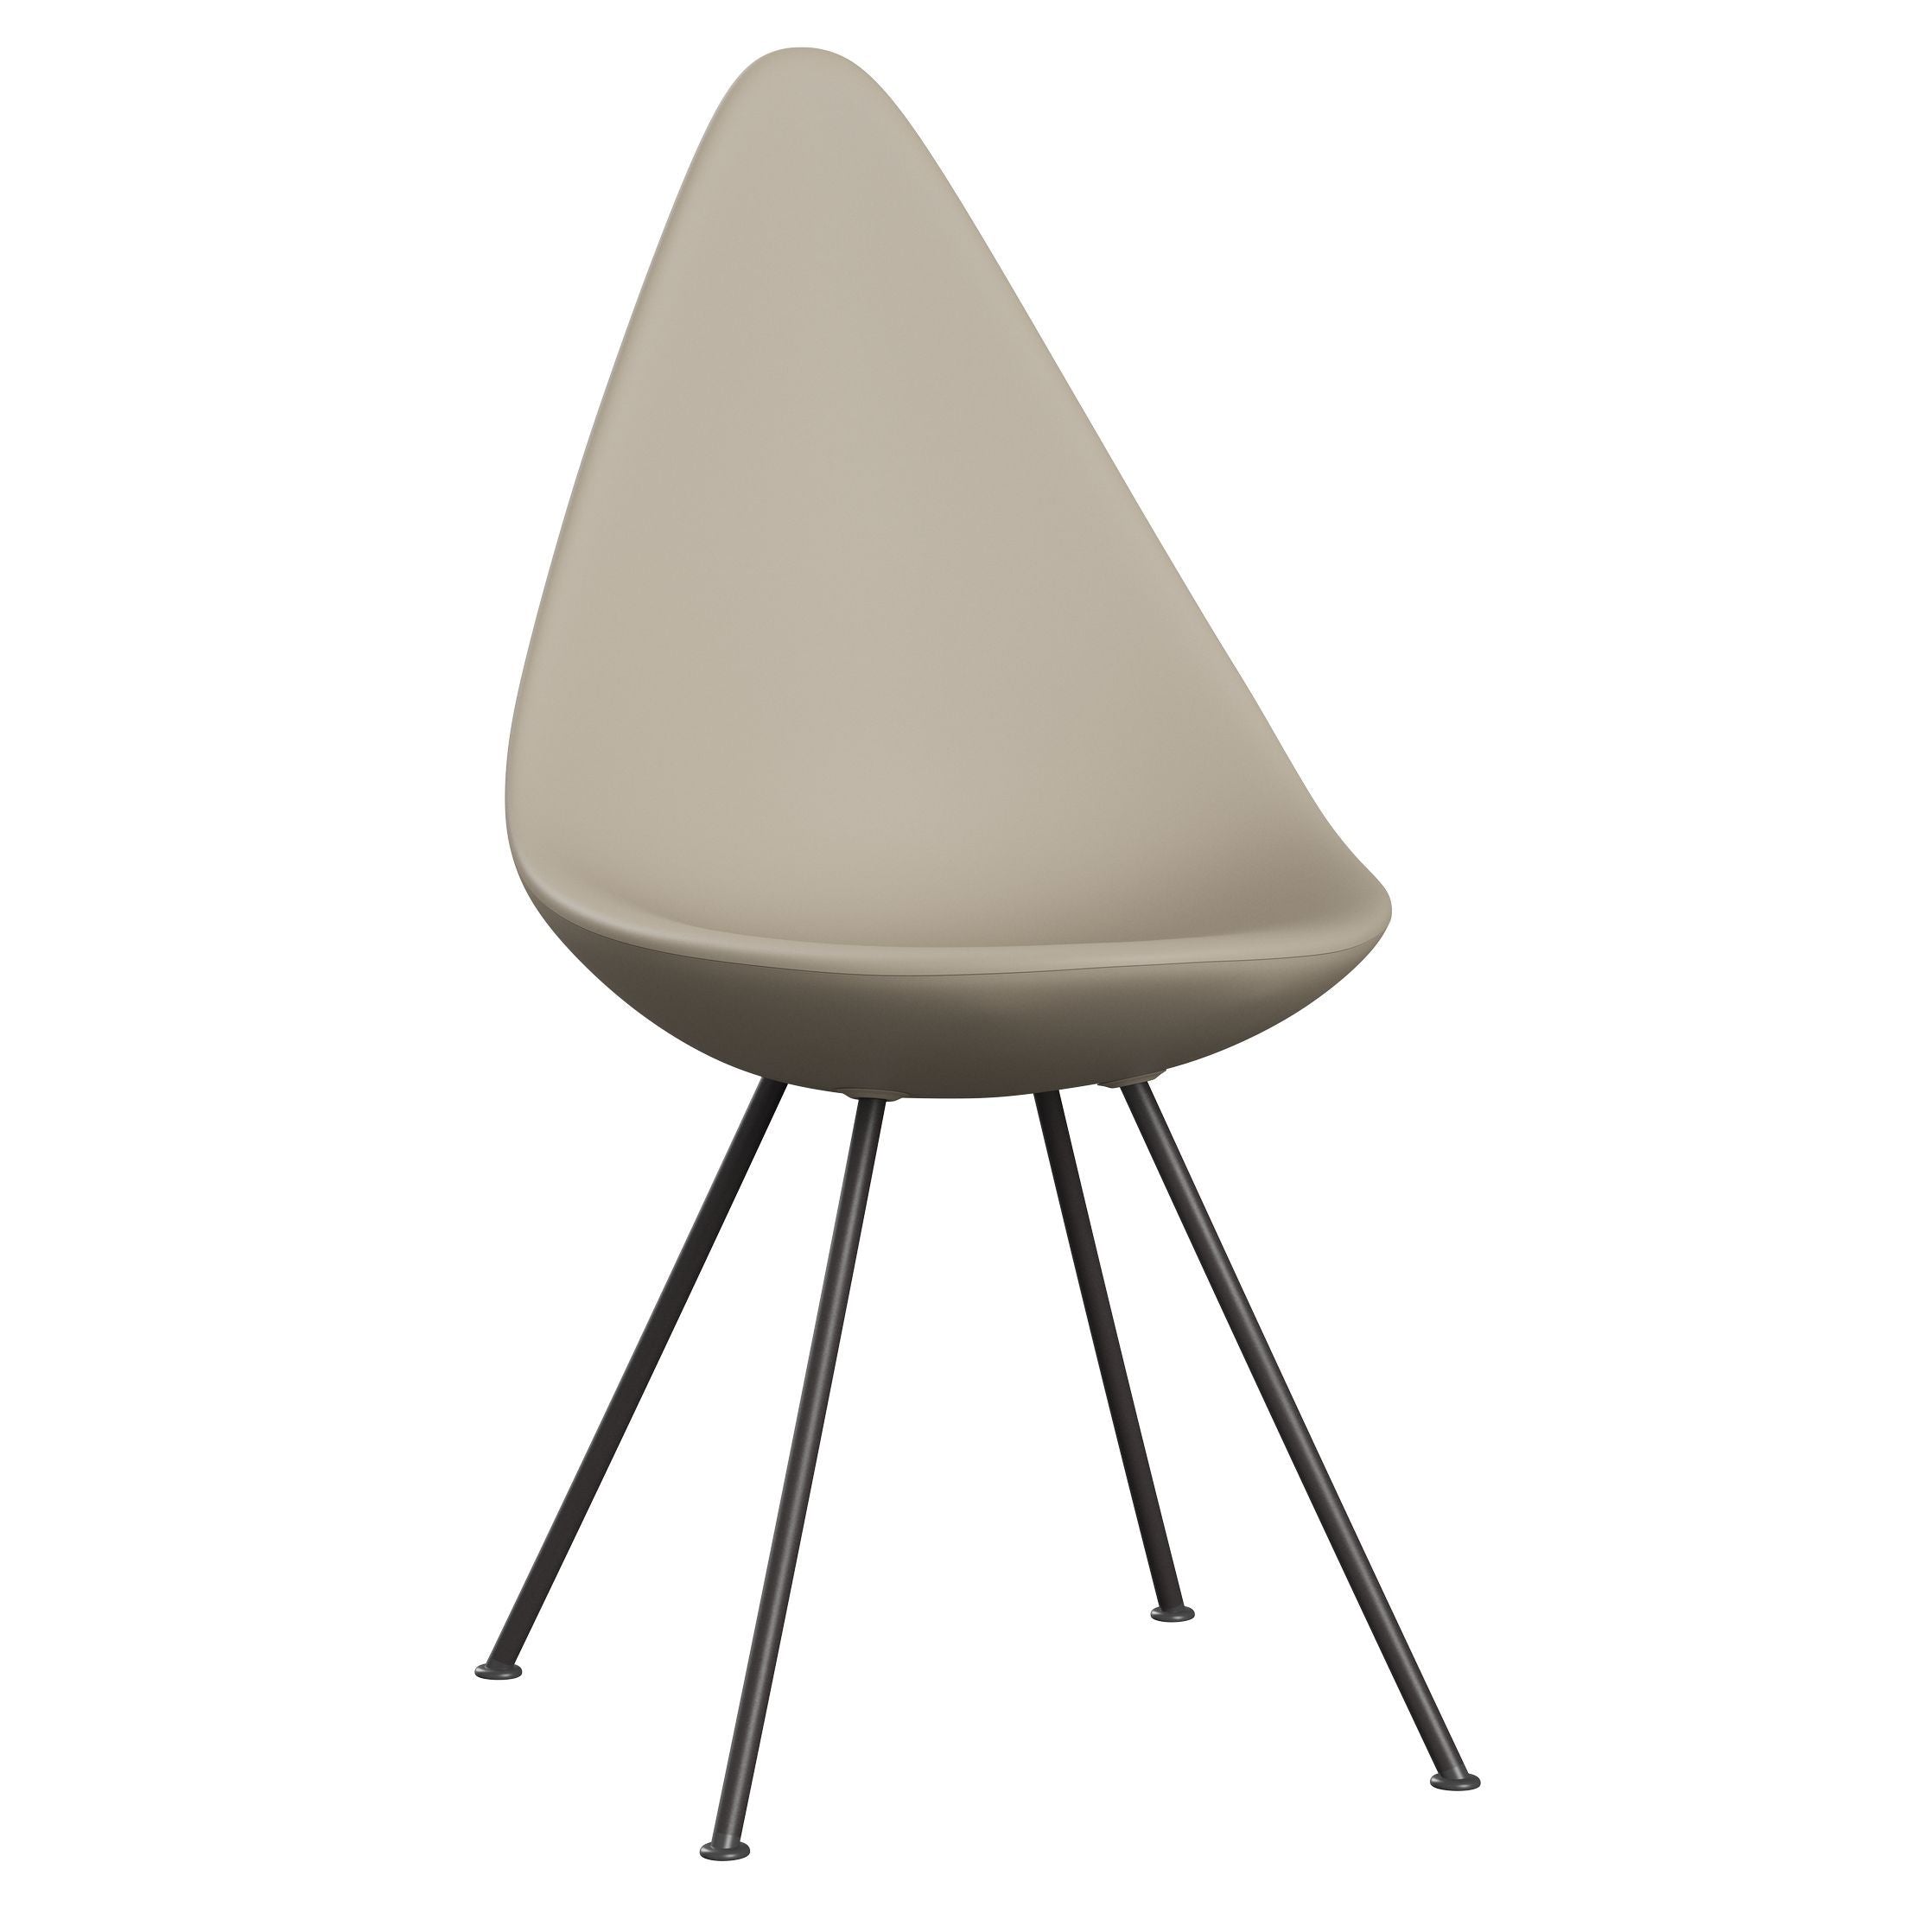 弗里茨·汉森（Fritz Hansen）滴椅，温暖的石墨/浅米色